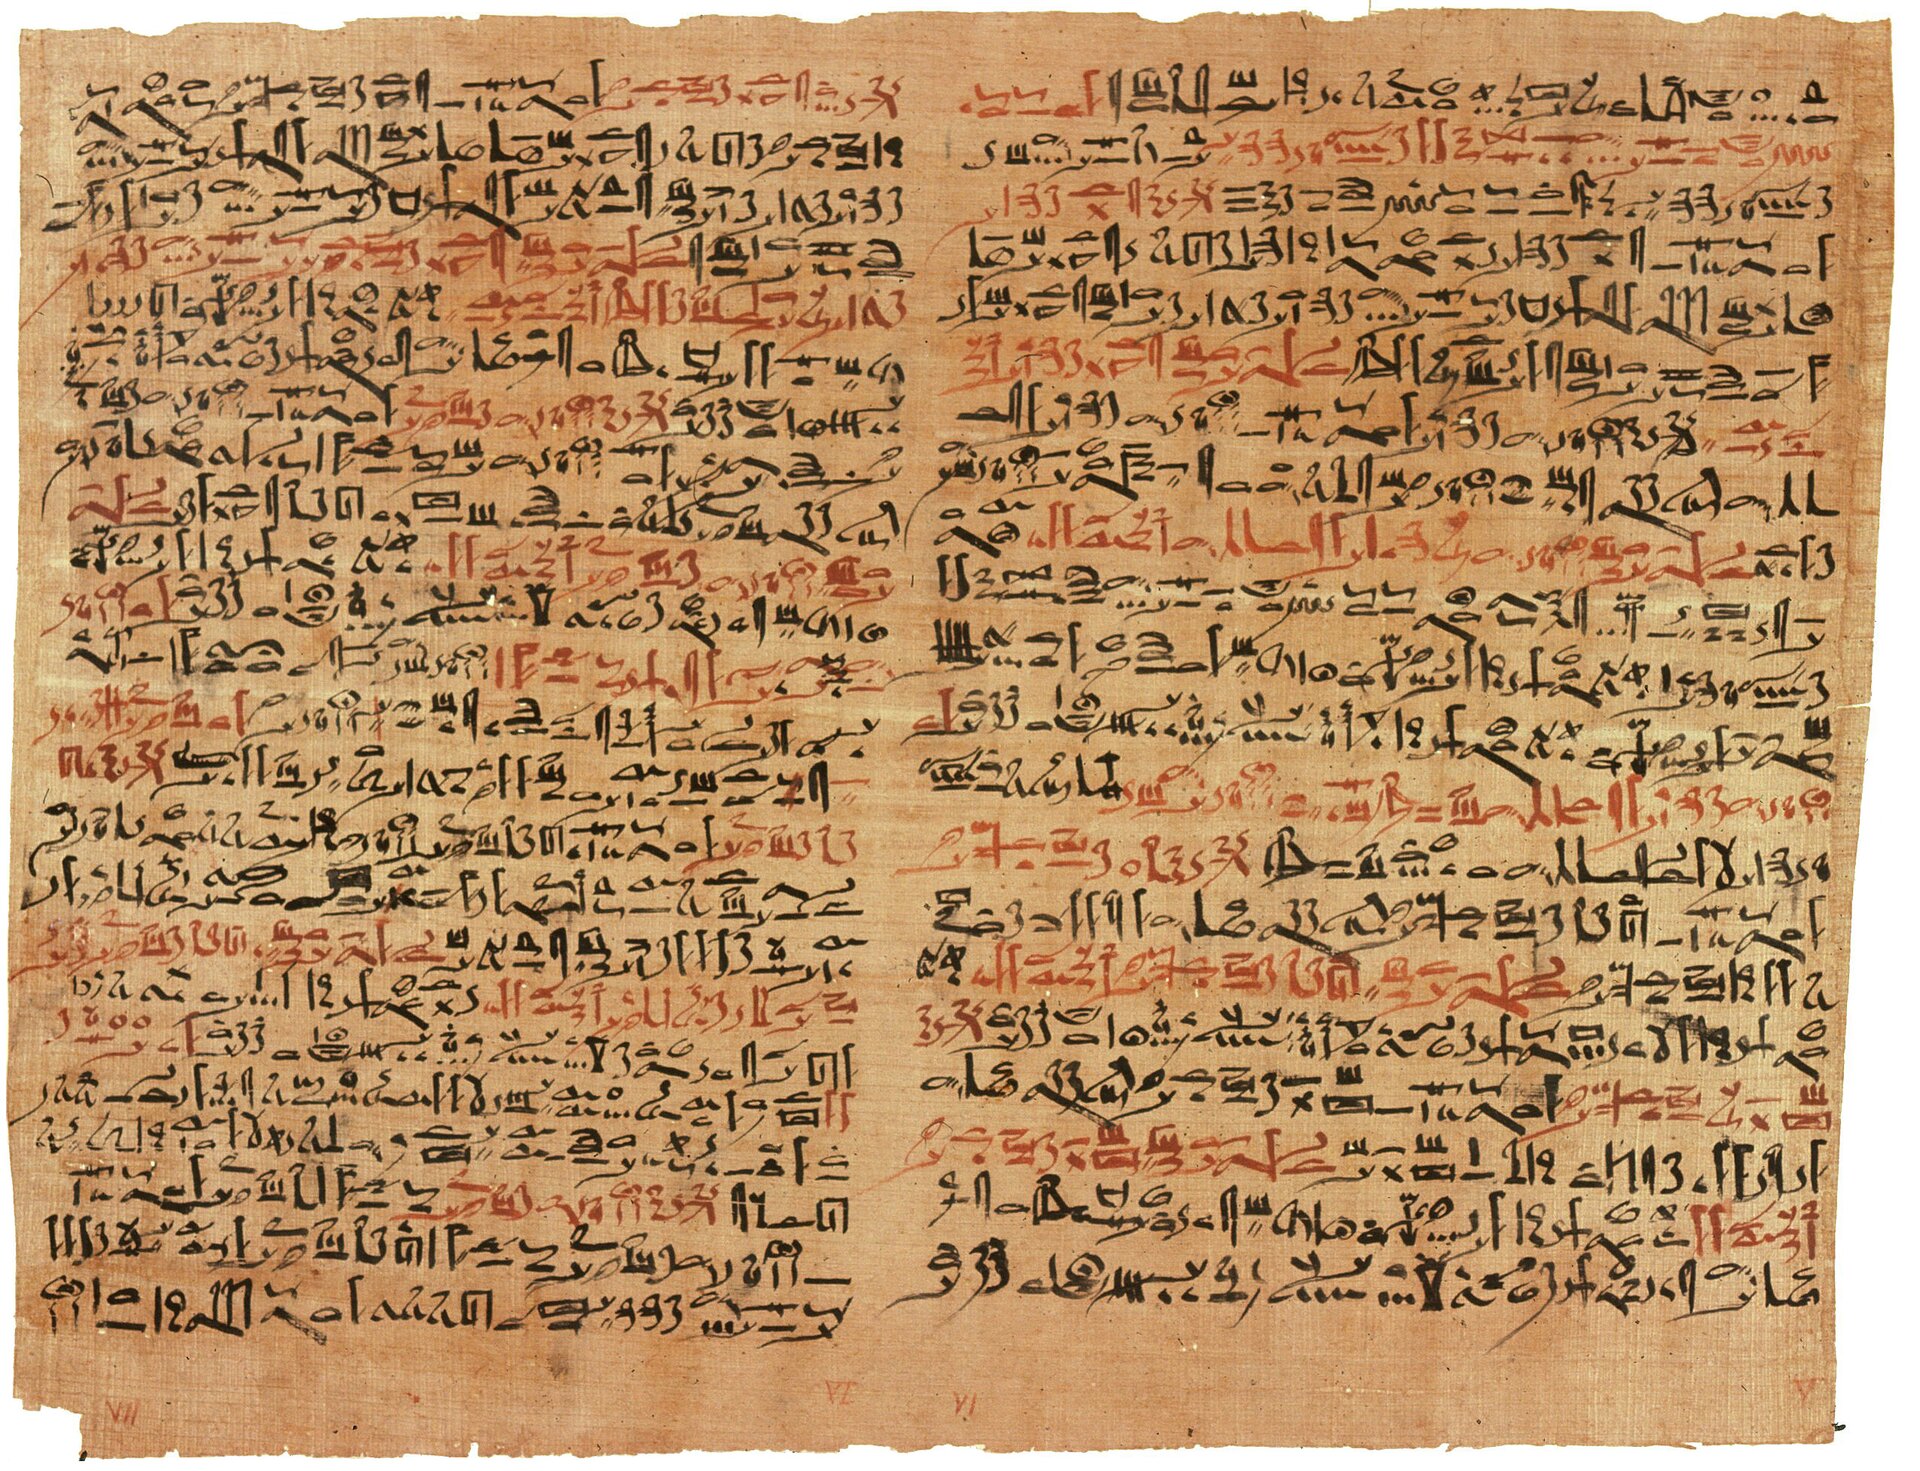 Najstarsze doniesienia o używaniu mydła pochodzą ze starożytnego Babilonu.Przepis na wytwarzanie mydła odczytano na babilońskiej glinianej tabliczce pochodzącej z ok. 2200 roku p.n.e. Podobnie na egipskich papirusach, pochodzących z 1500 roku p.n.e., odkryto zapisy mówiące o tym, że starożytni Egipcjanie regularnie korzystali z kąpieli, do której używali mydła wytwarzanego z tłuszczów zwierzęcych i roślinnych.